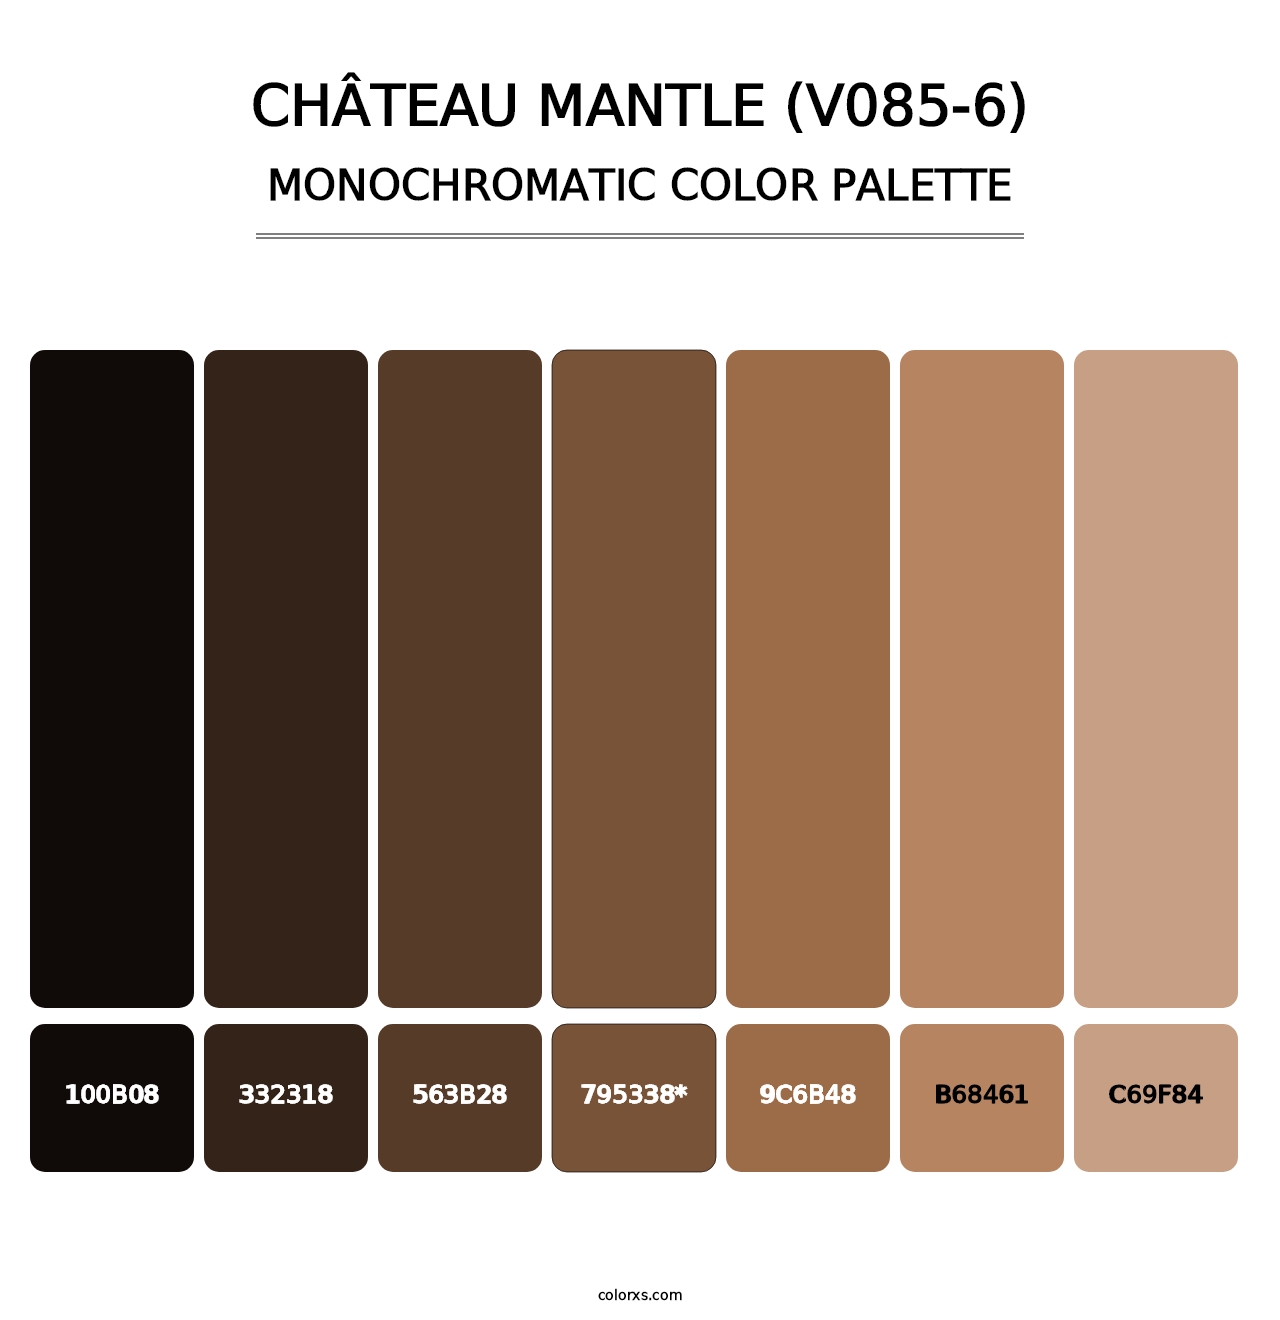 Château Mantle (V085-6) - Monochromatic Color Palette